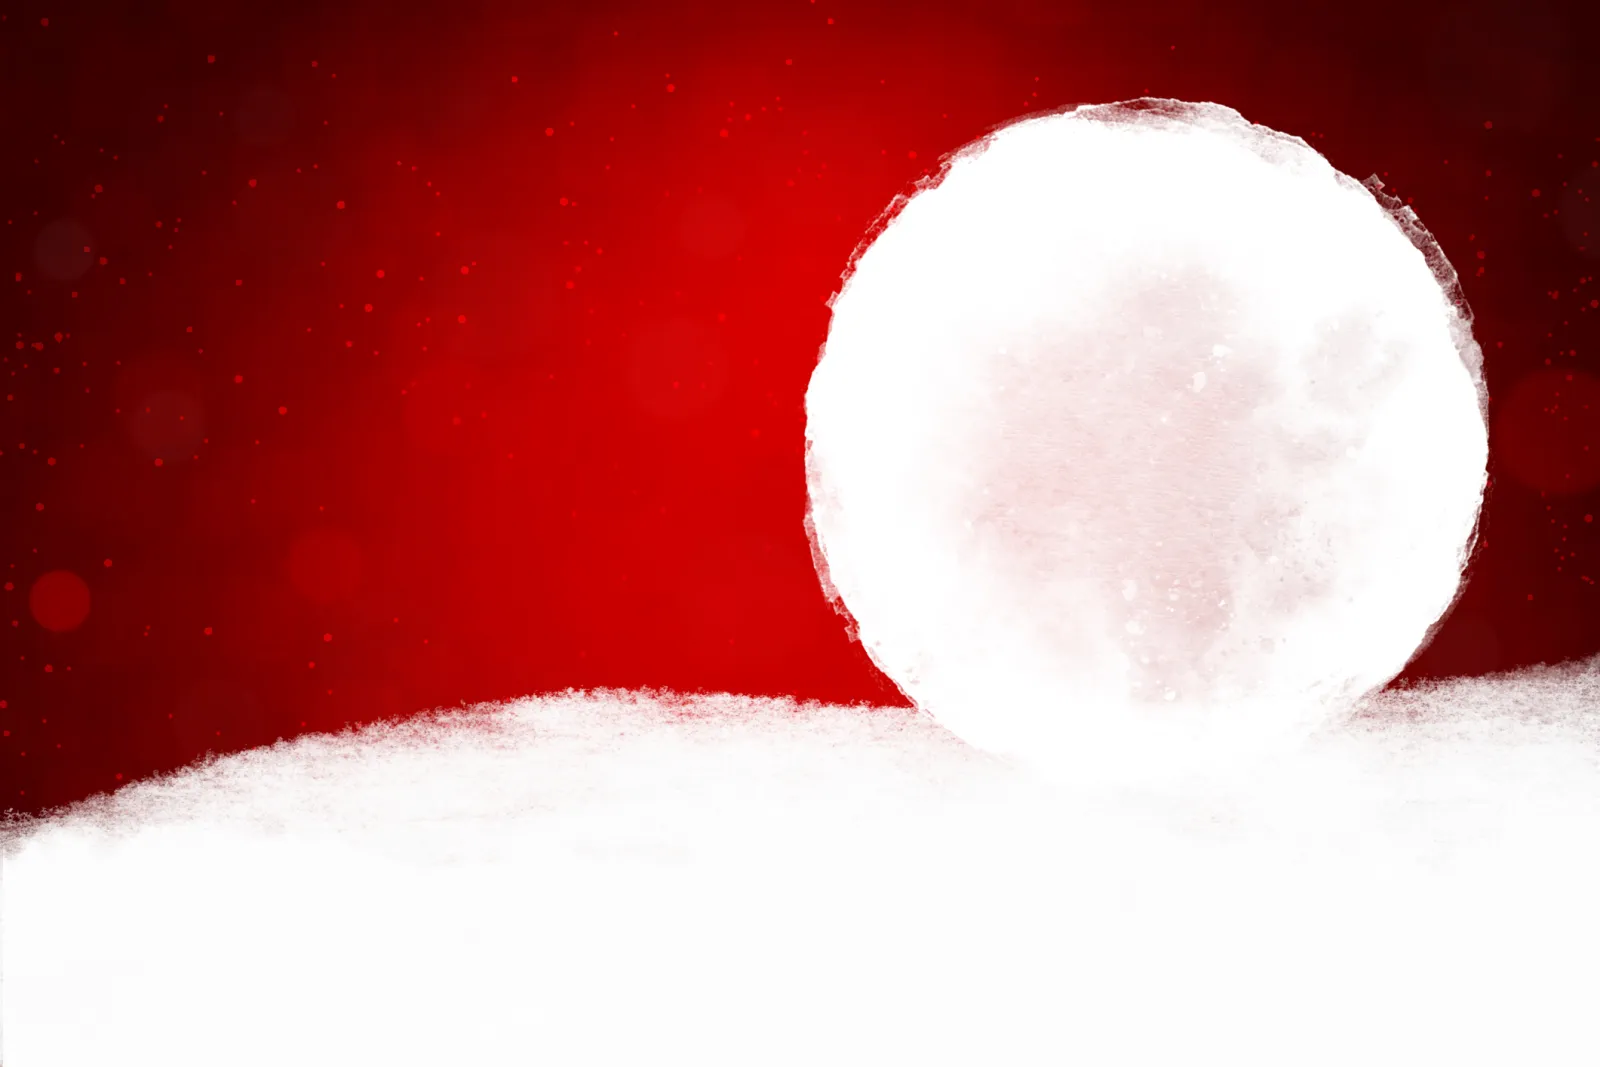 Ven a Conocer Nuestra Bola de Nieve Personalizada - Emotions